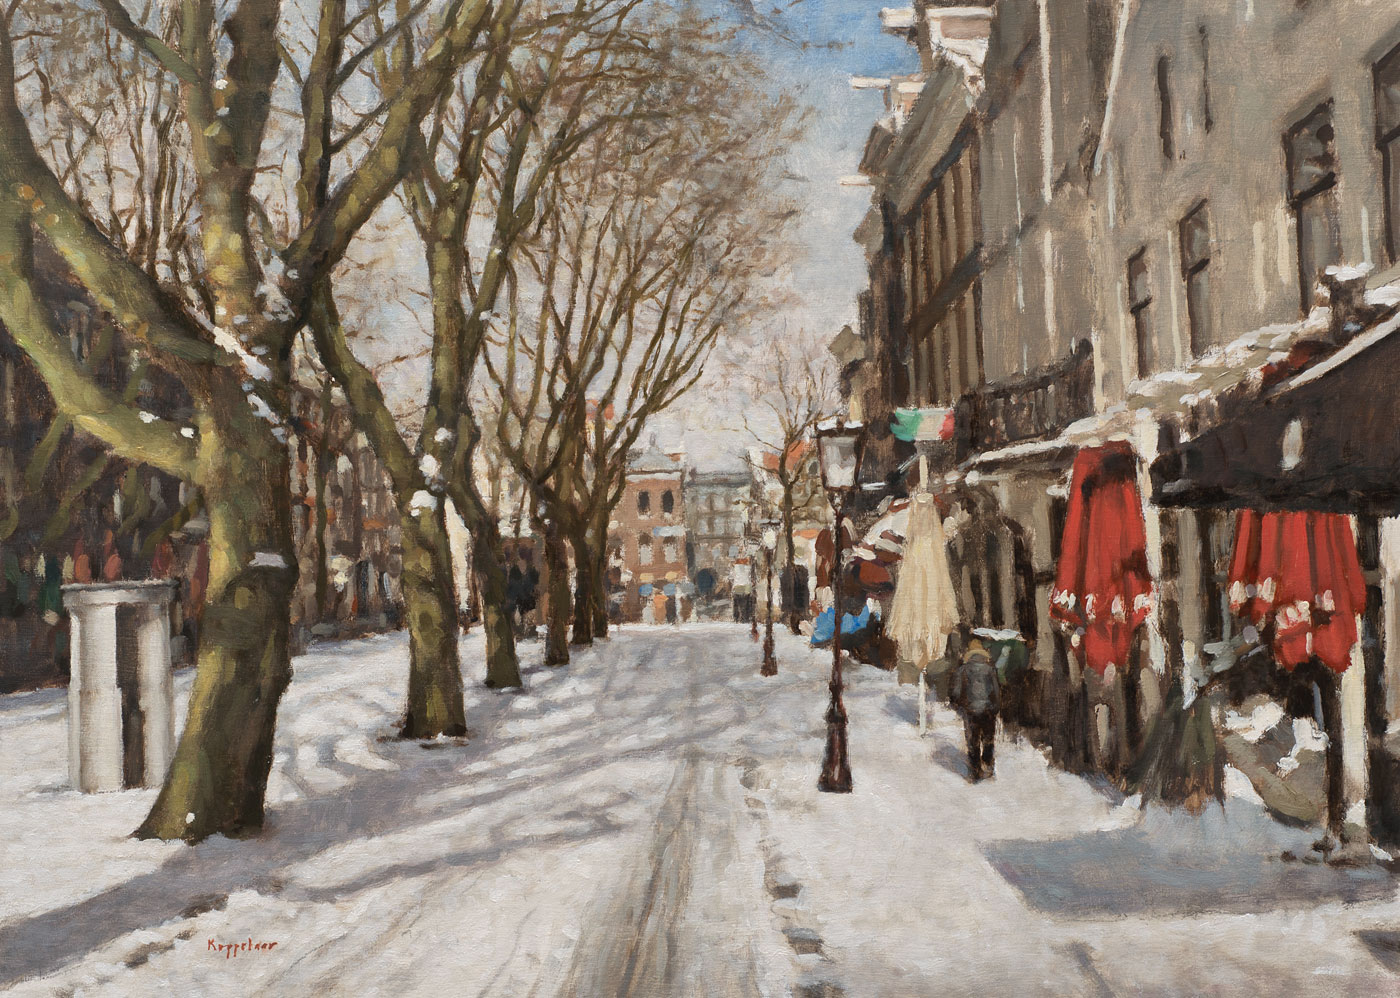 stadsgezicht: 'Thorbeckeplein in de Winter' olieverf op linnen door kunstschilder Frans Koppelaar.